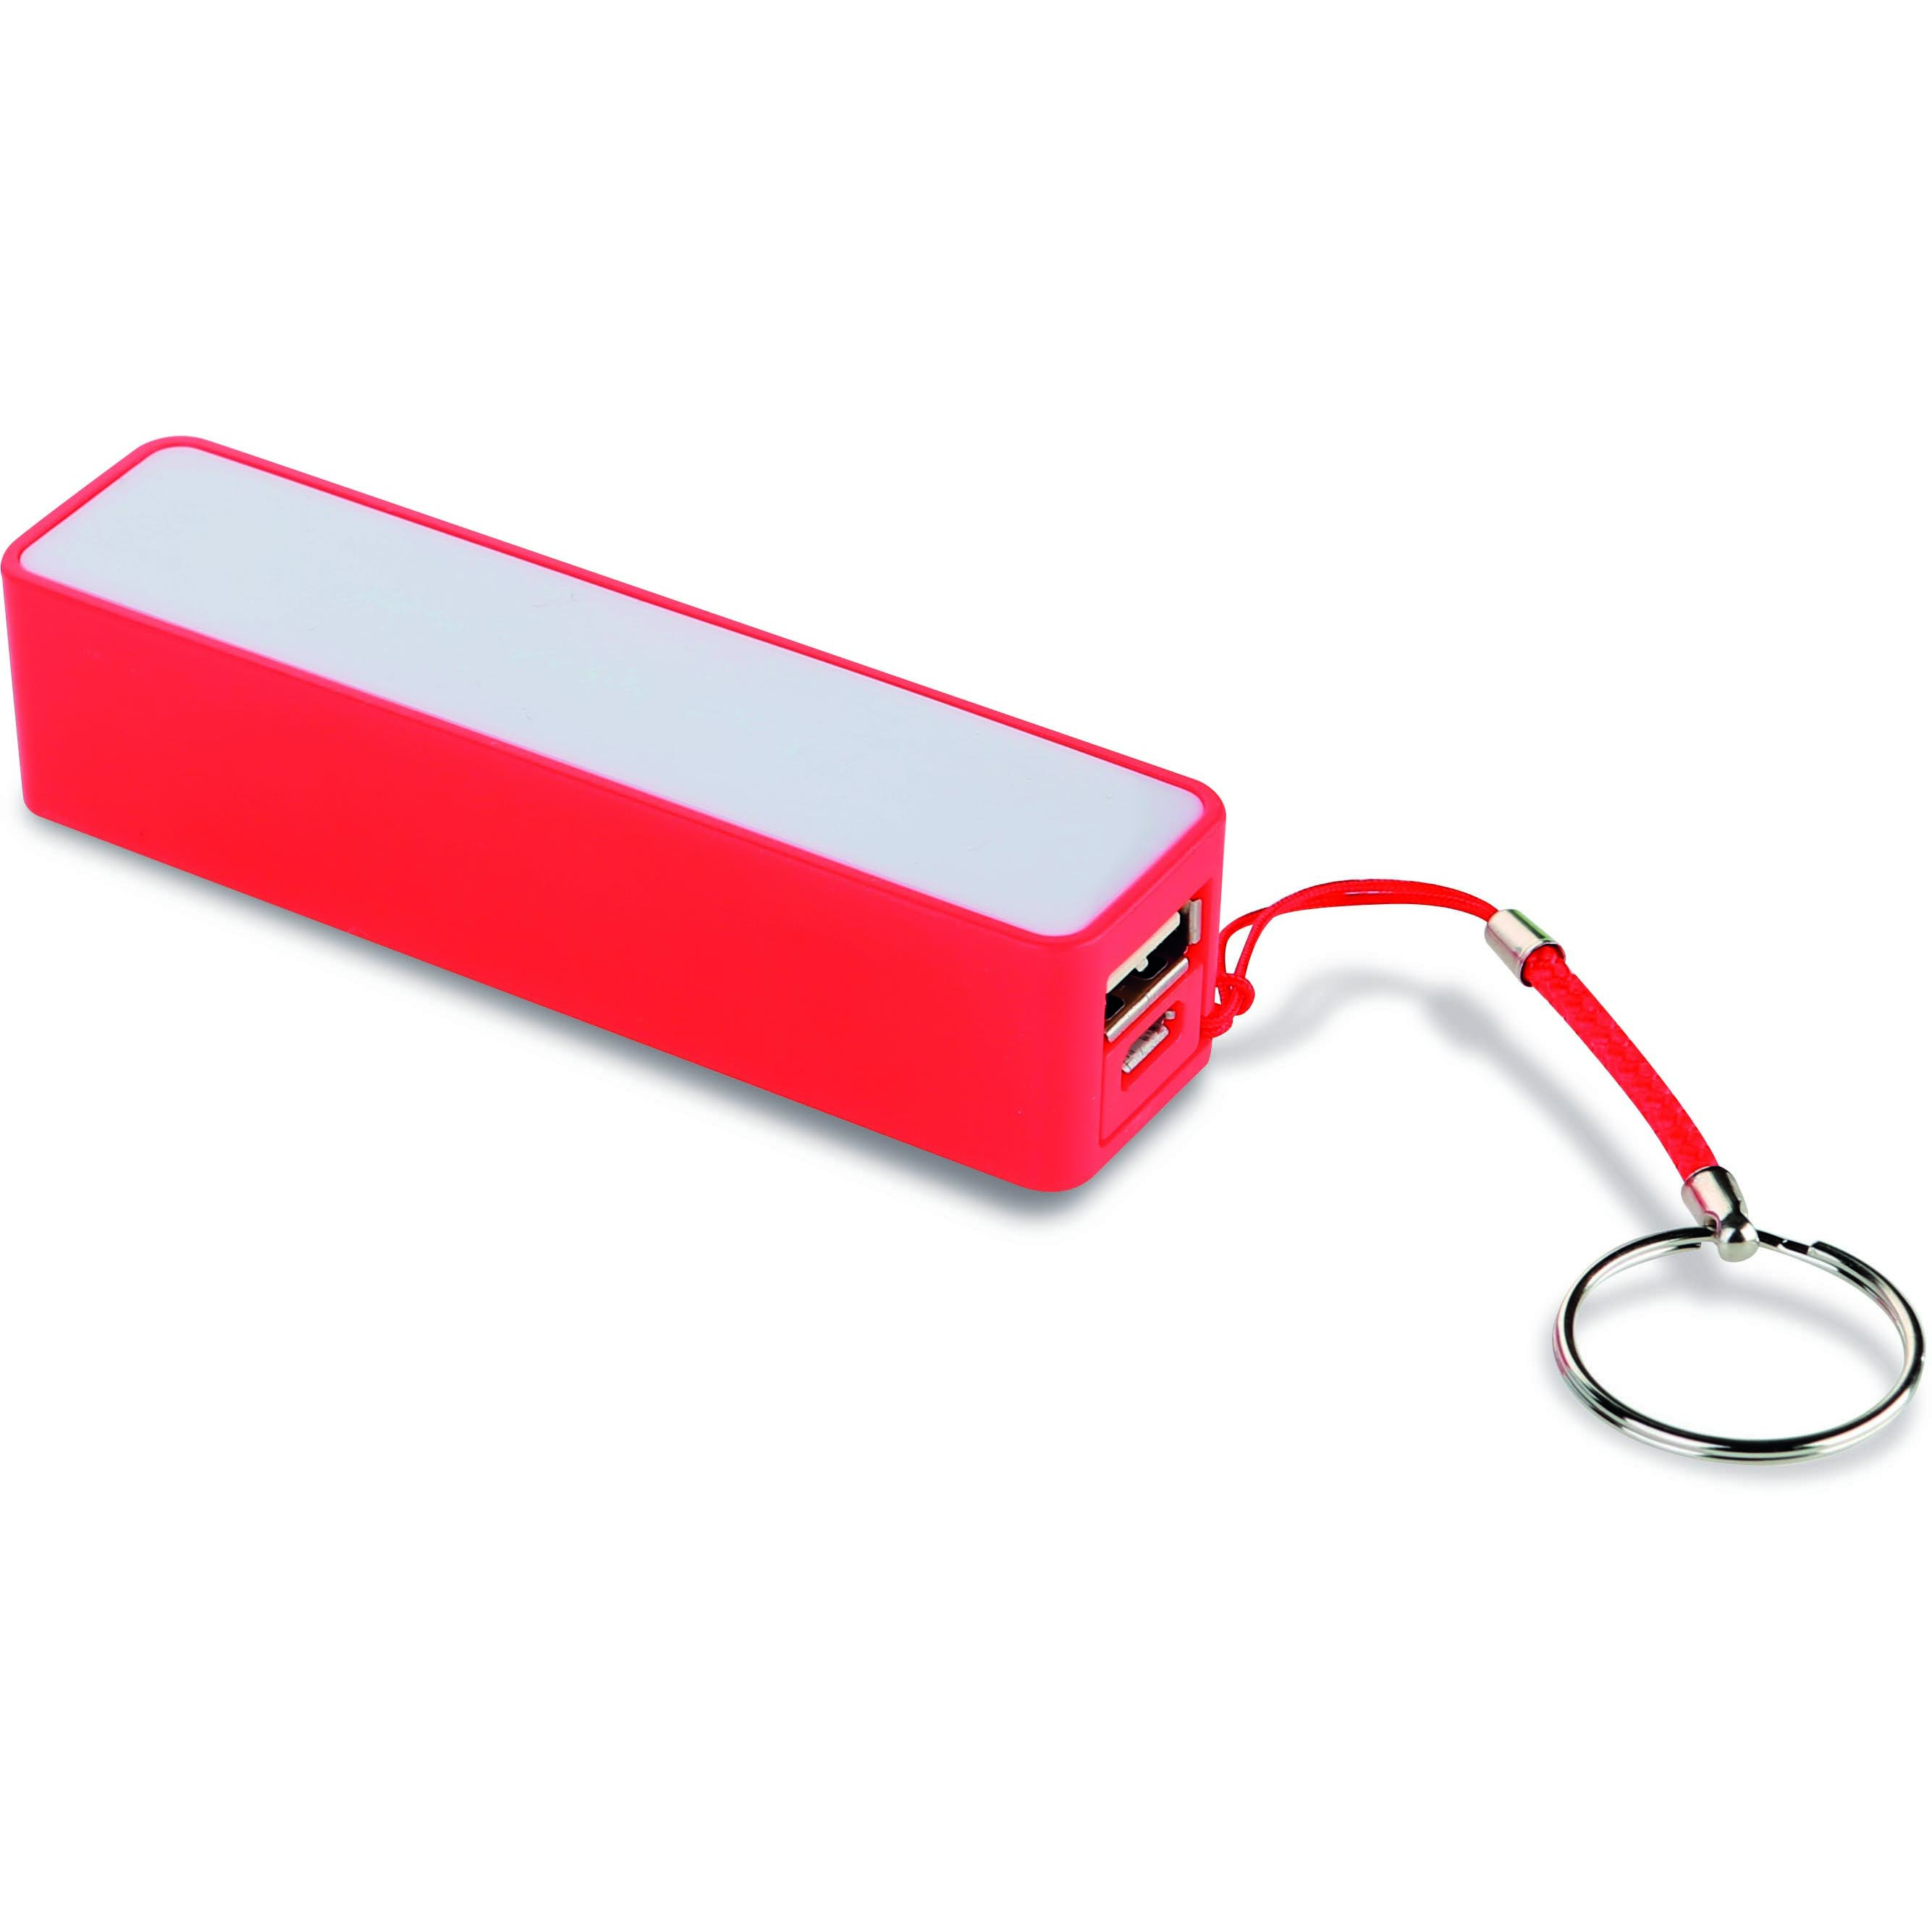 Caricatore USB in plastica colorata